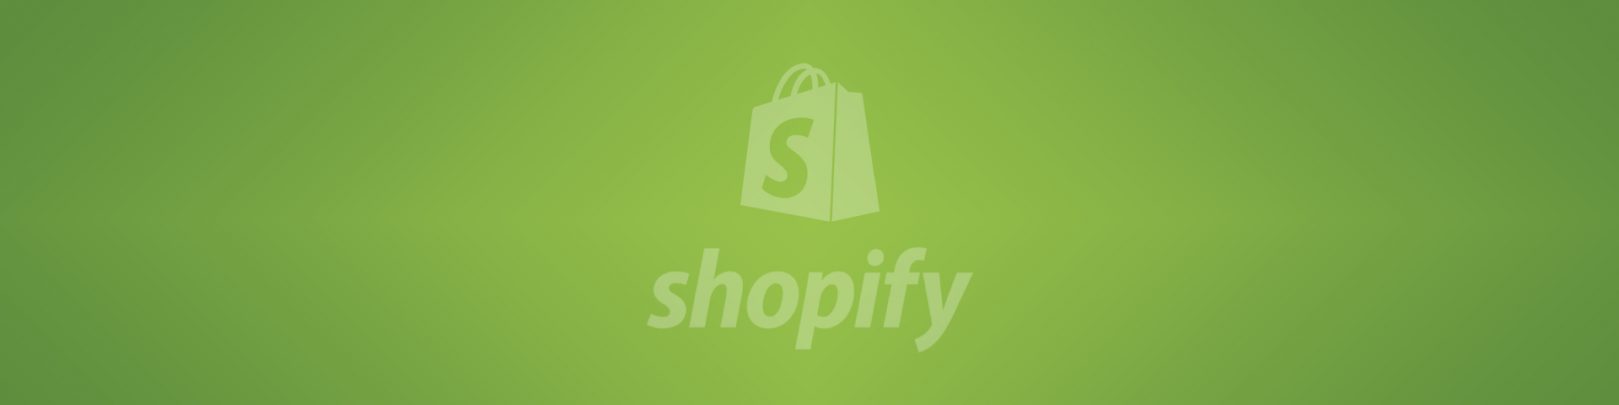 shopify-blog-banner